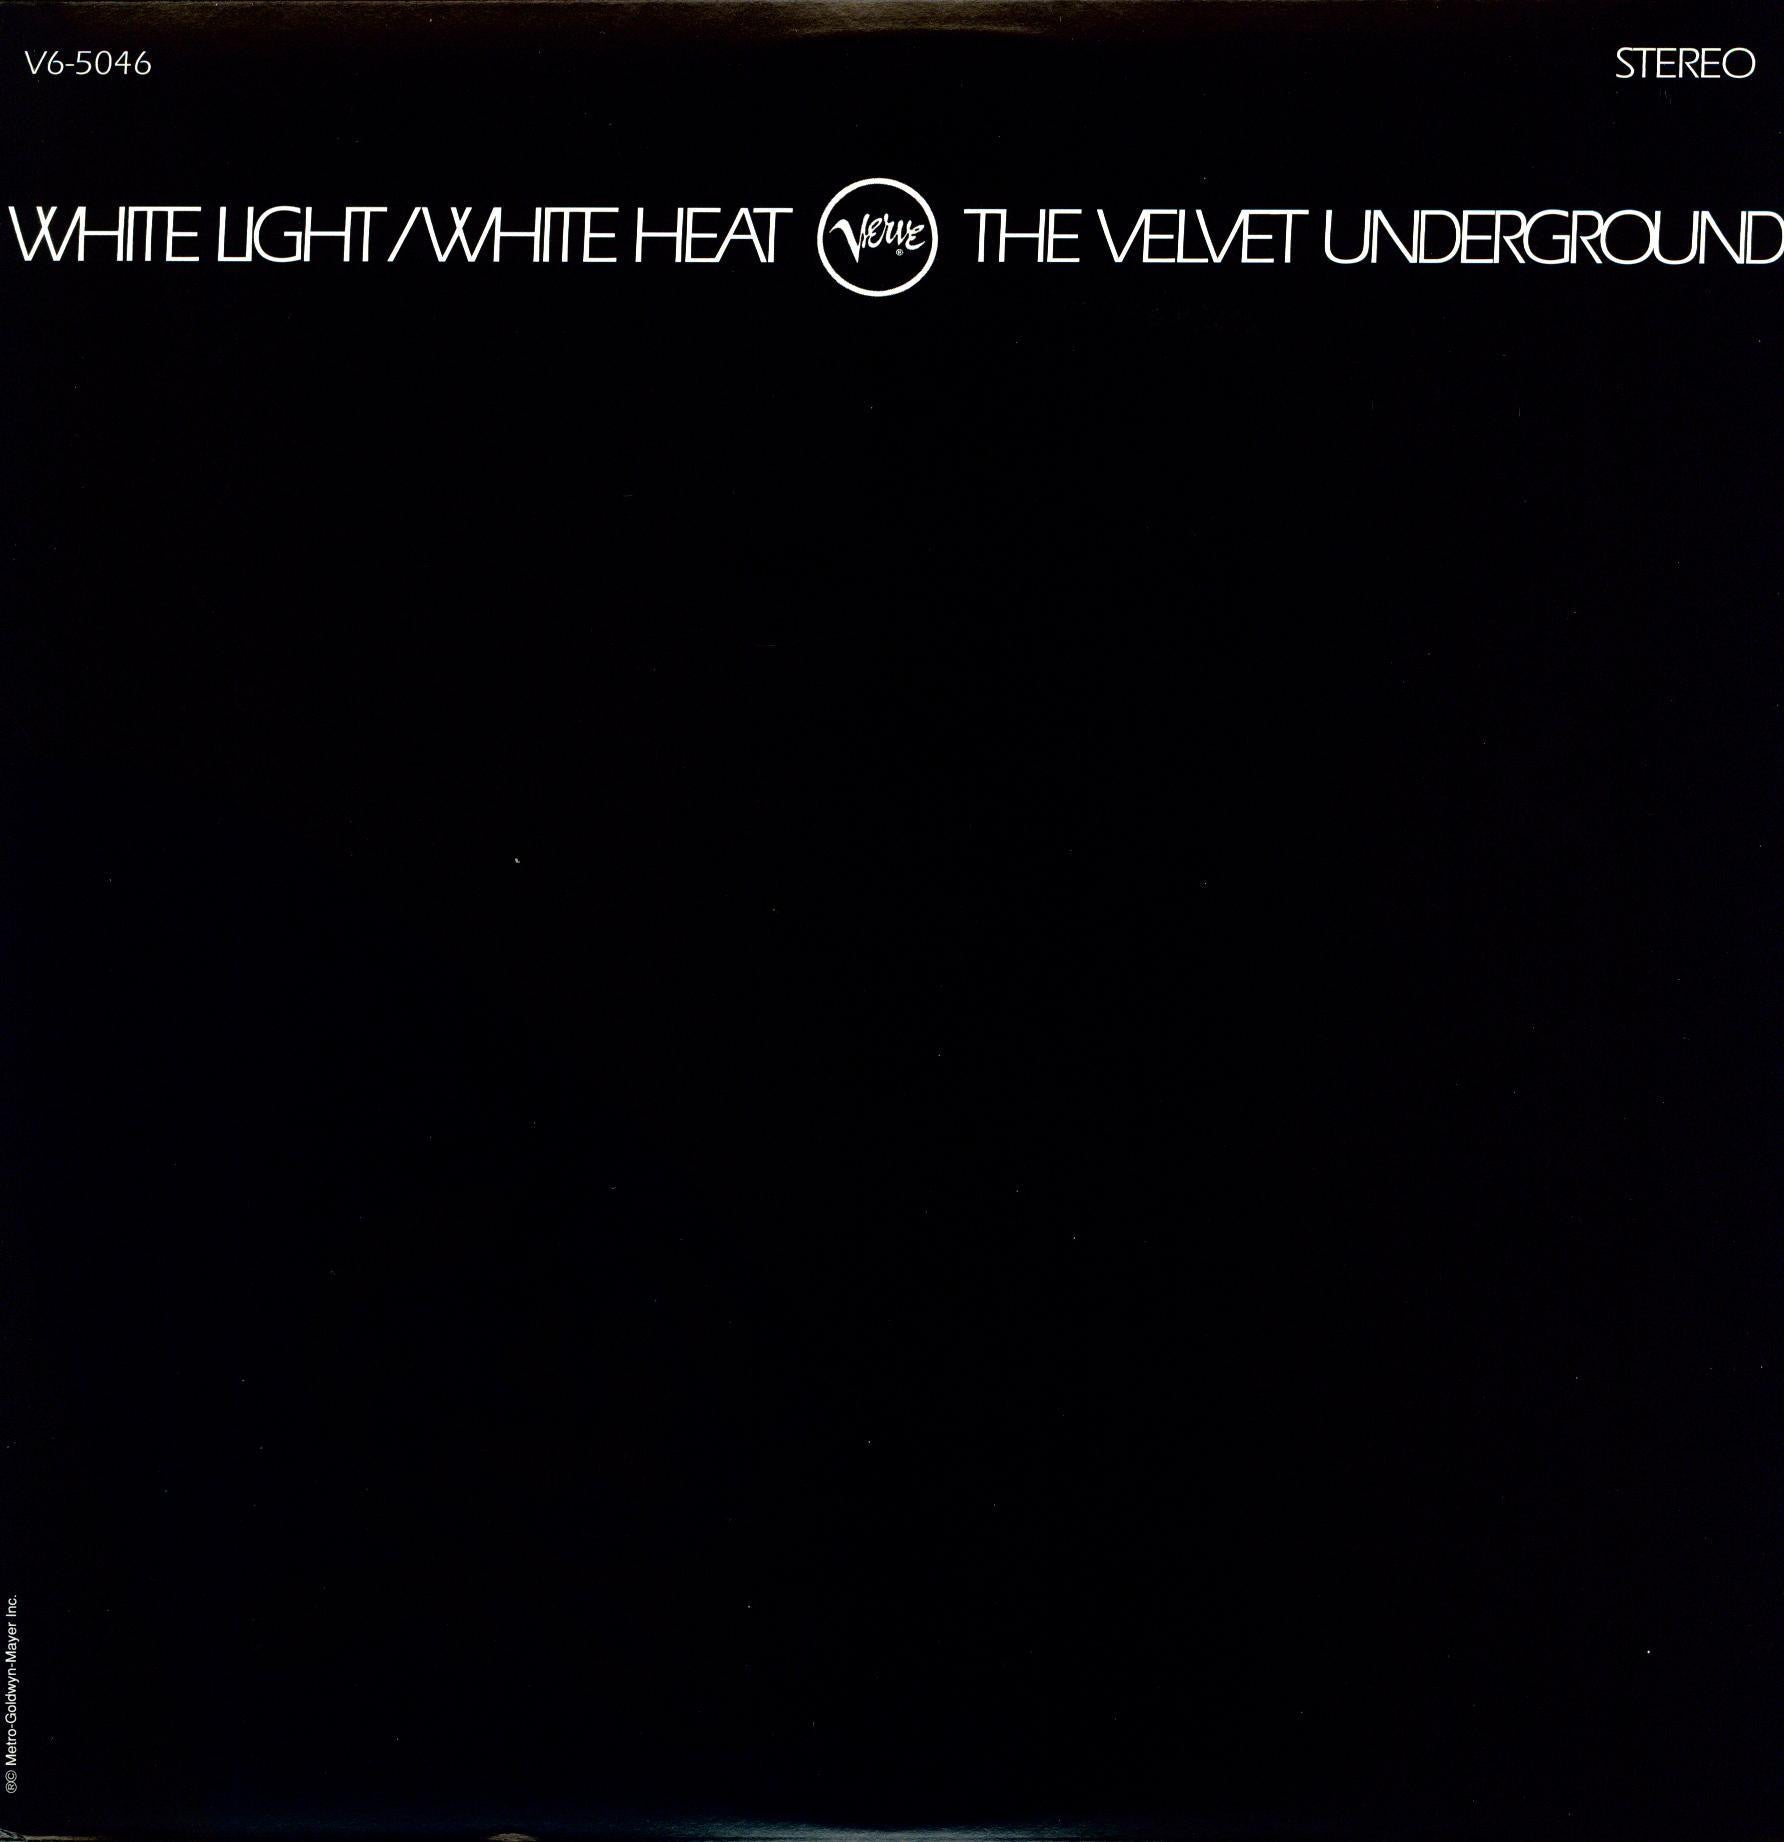 Velvet Underground - White Light/White Heat (Vinyl LP)